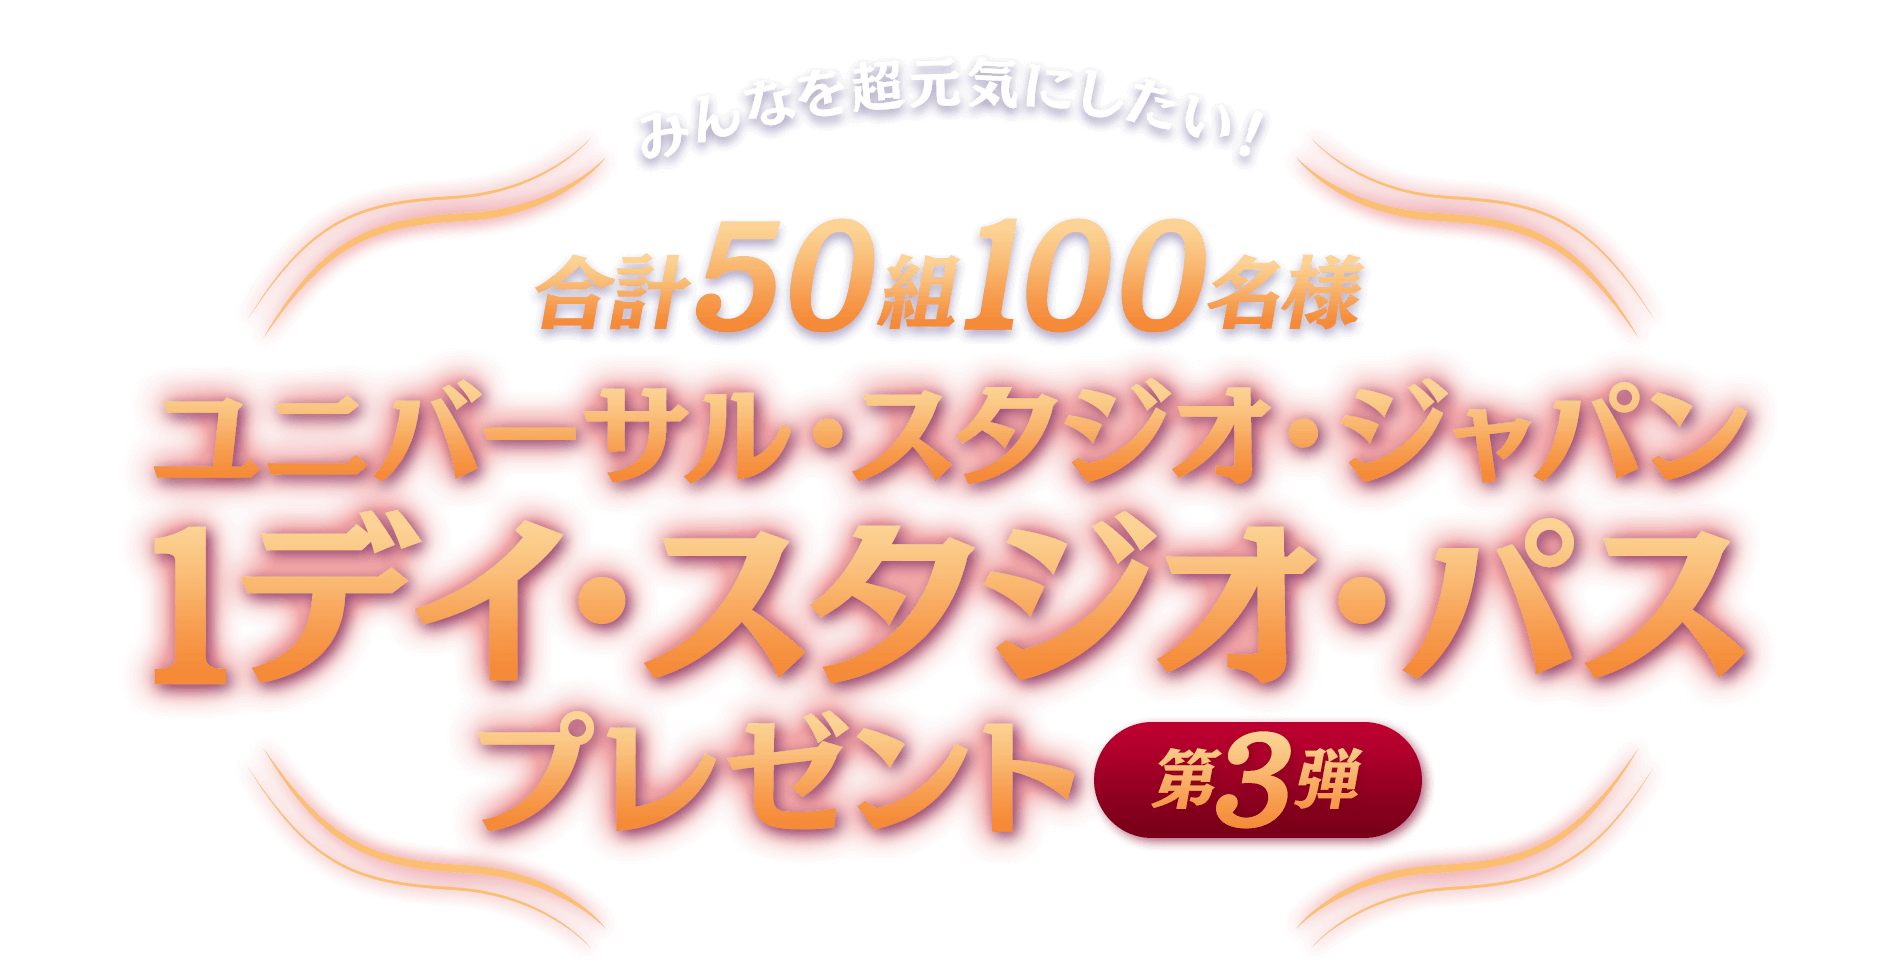 みんなを超元気にしたい！ ユニバーサル・スタジオ・ジャパン 1デイ・スタジオ・パスを50組100名様にプレゼント！